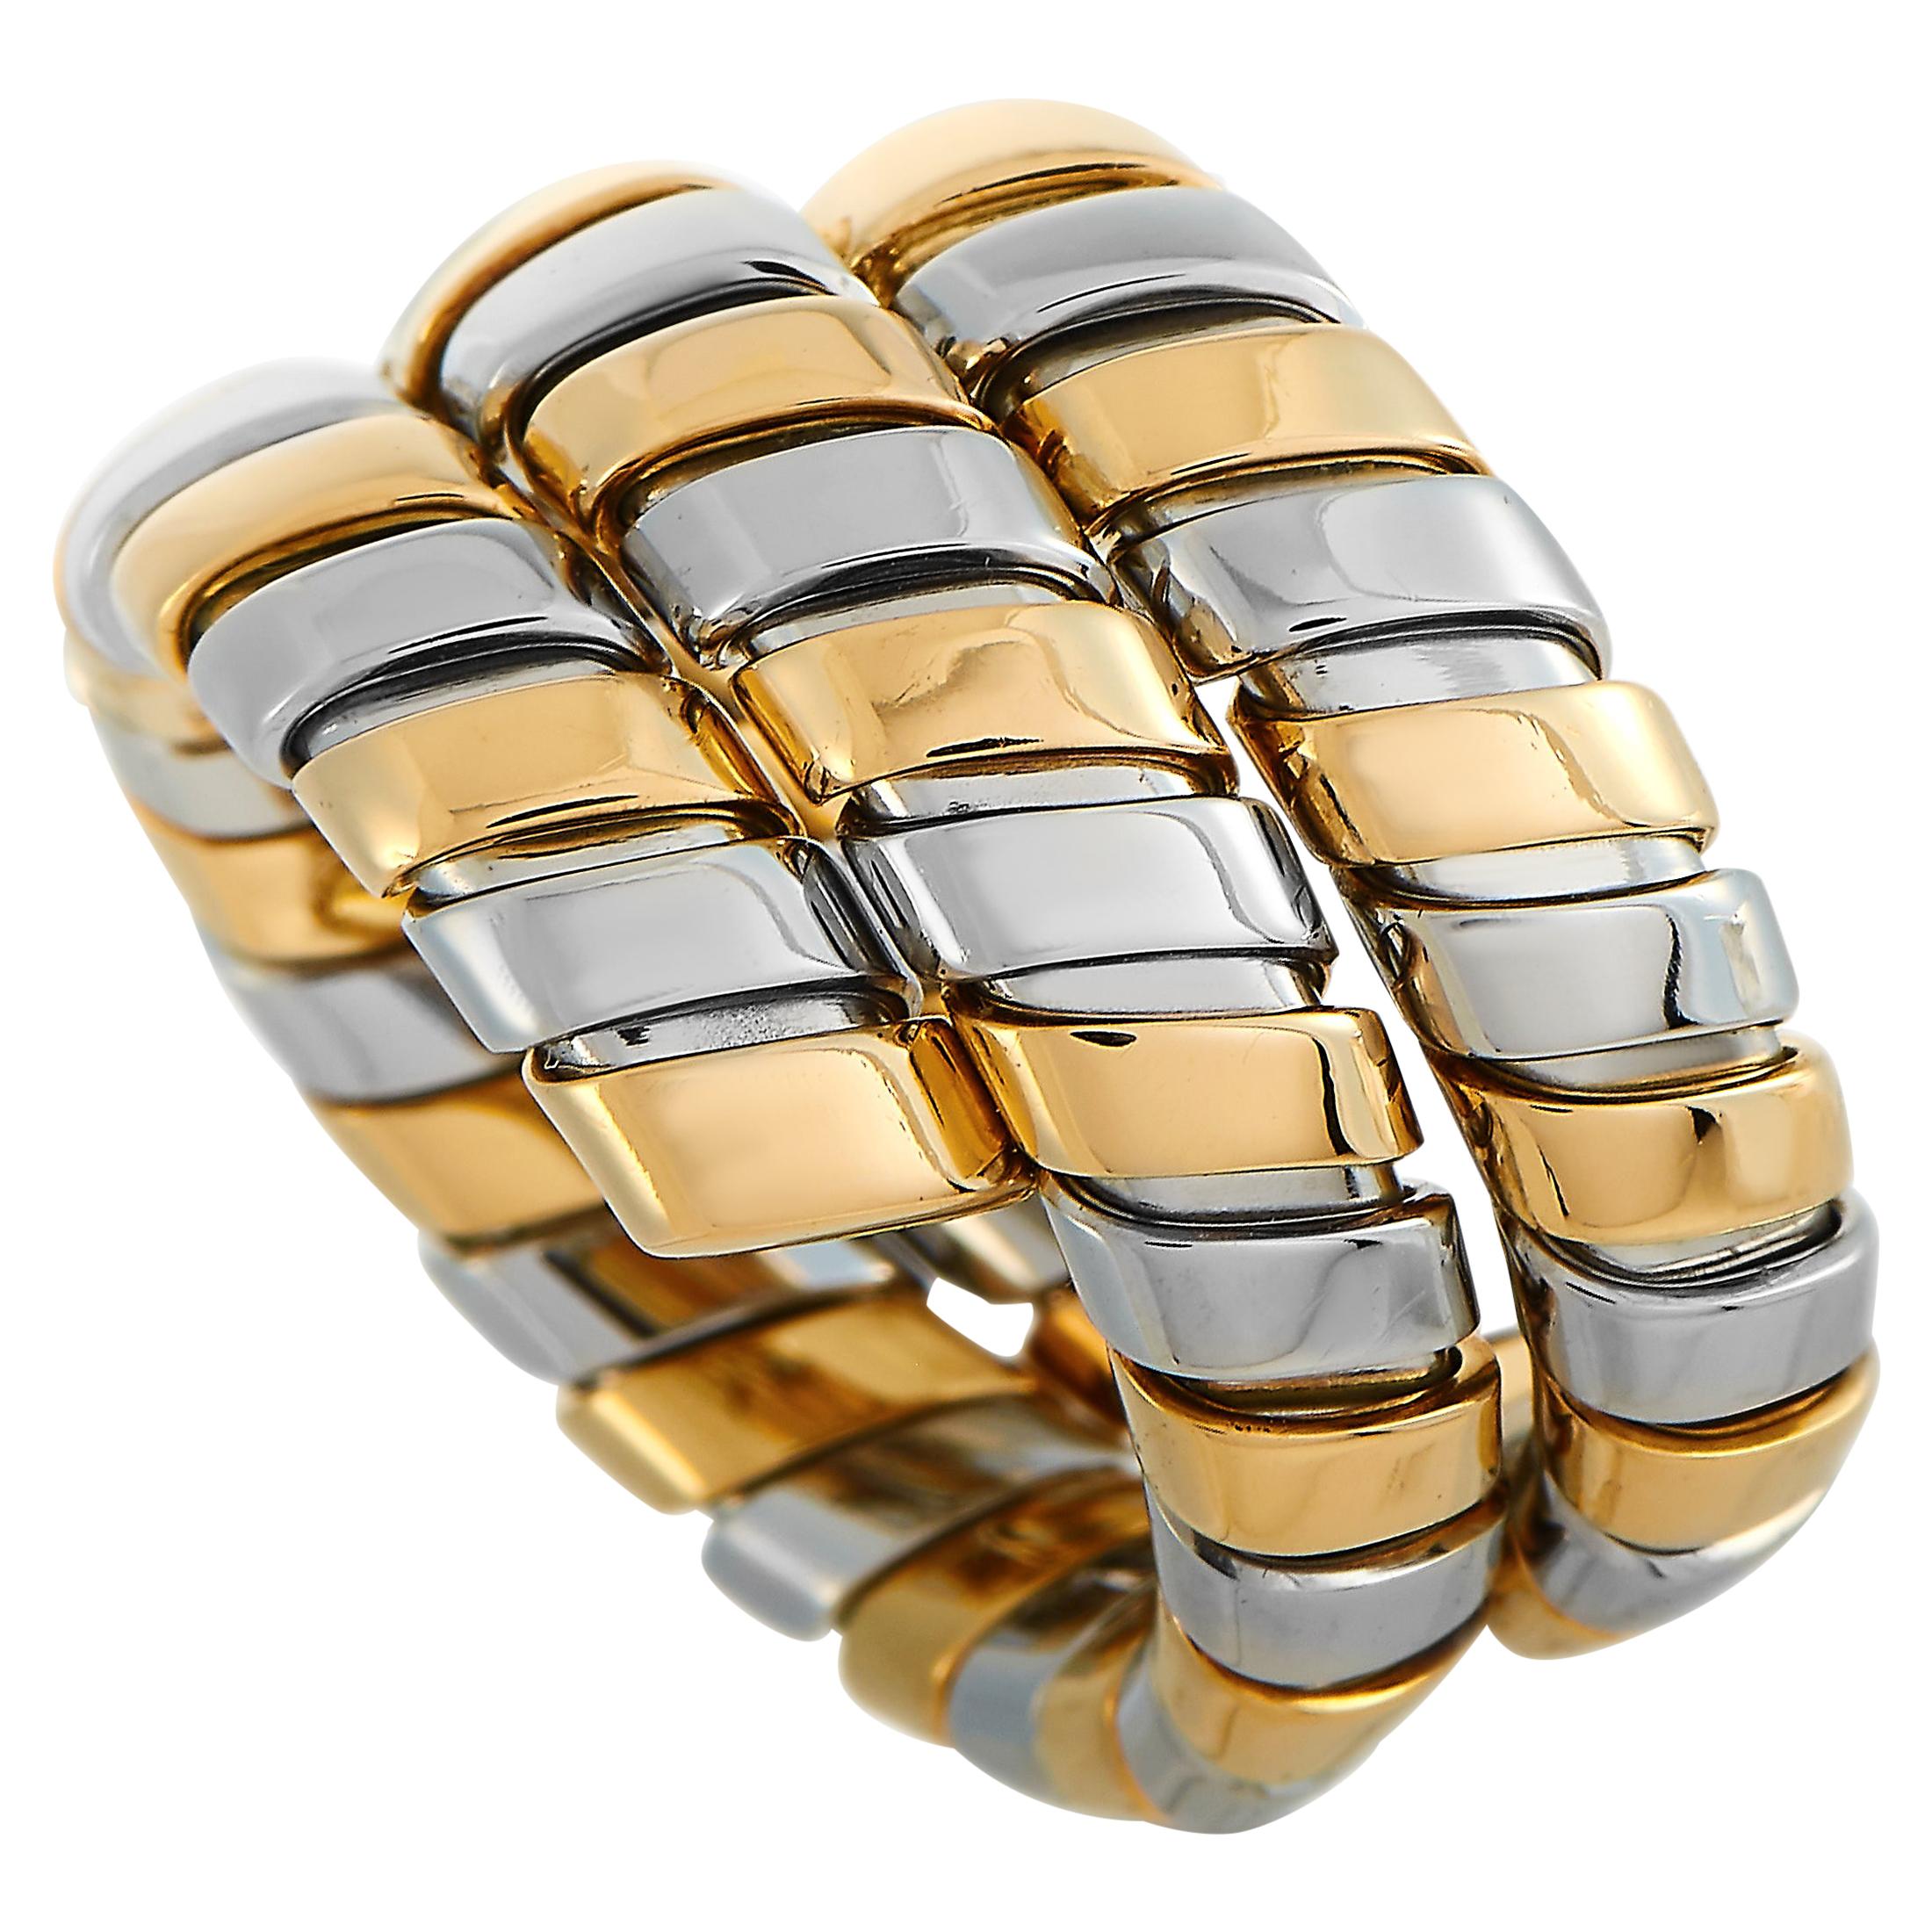 Bvlgari 18 Karat Yellow Gold and Stainless Steel Tubogas Ring